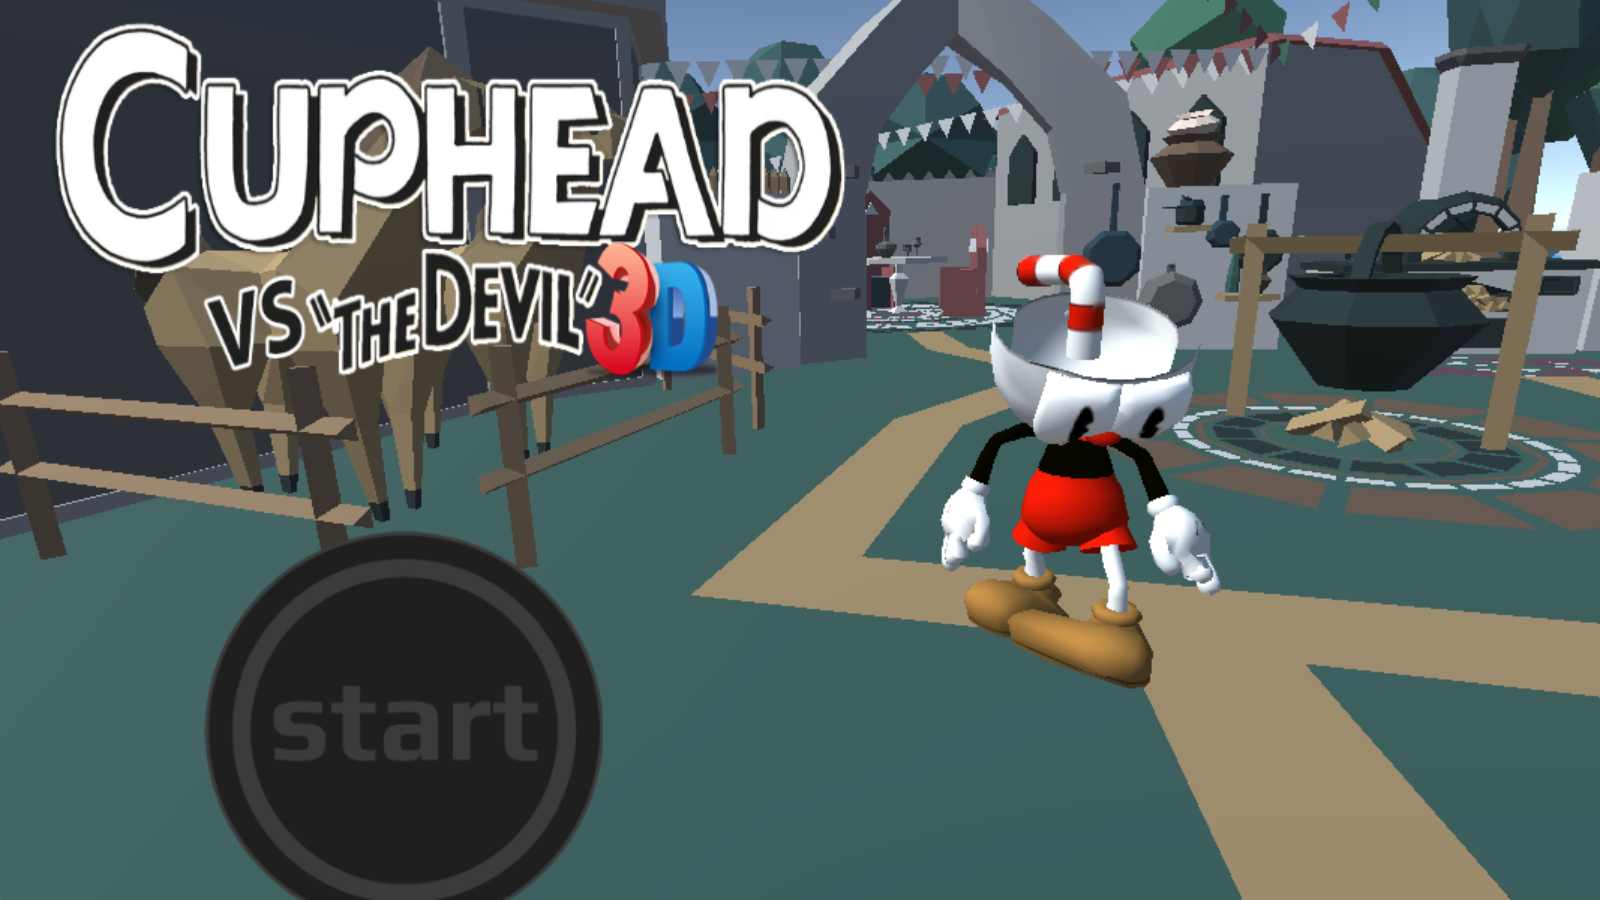 茶杯头3d版游戏中文手机版（Cuphead vs the devil 3D）图1: